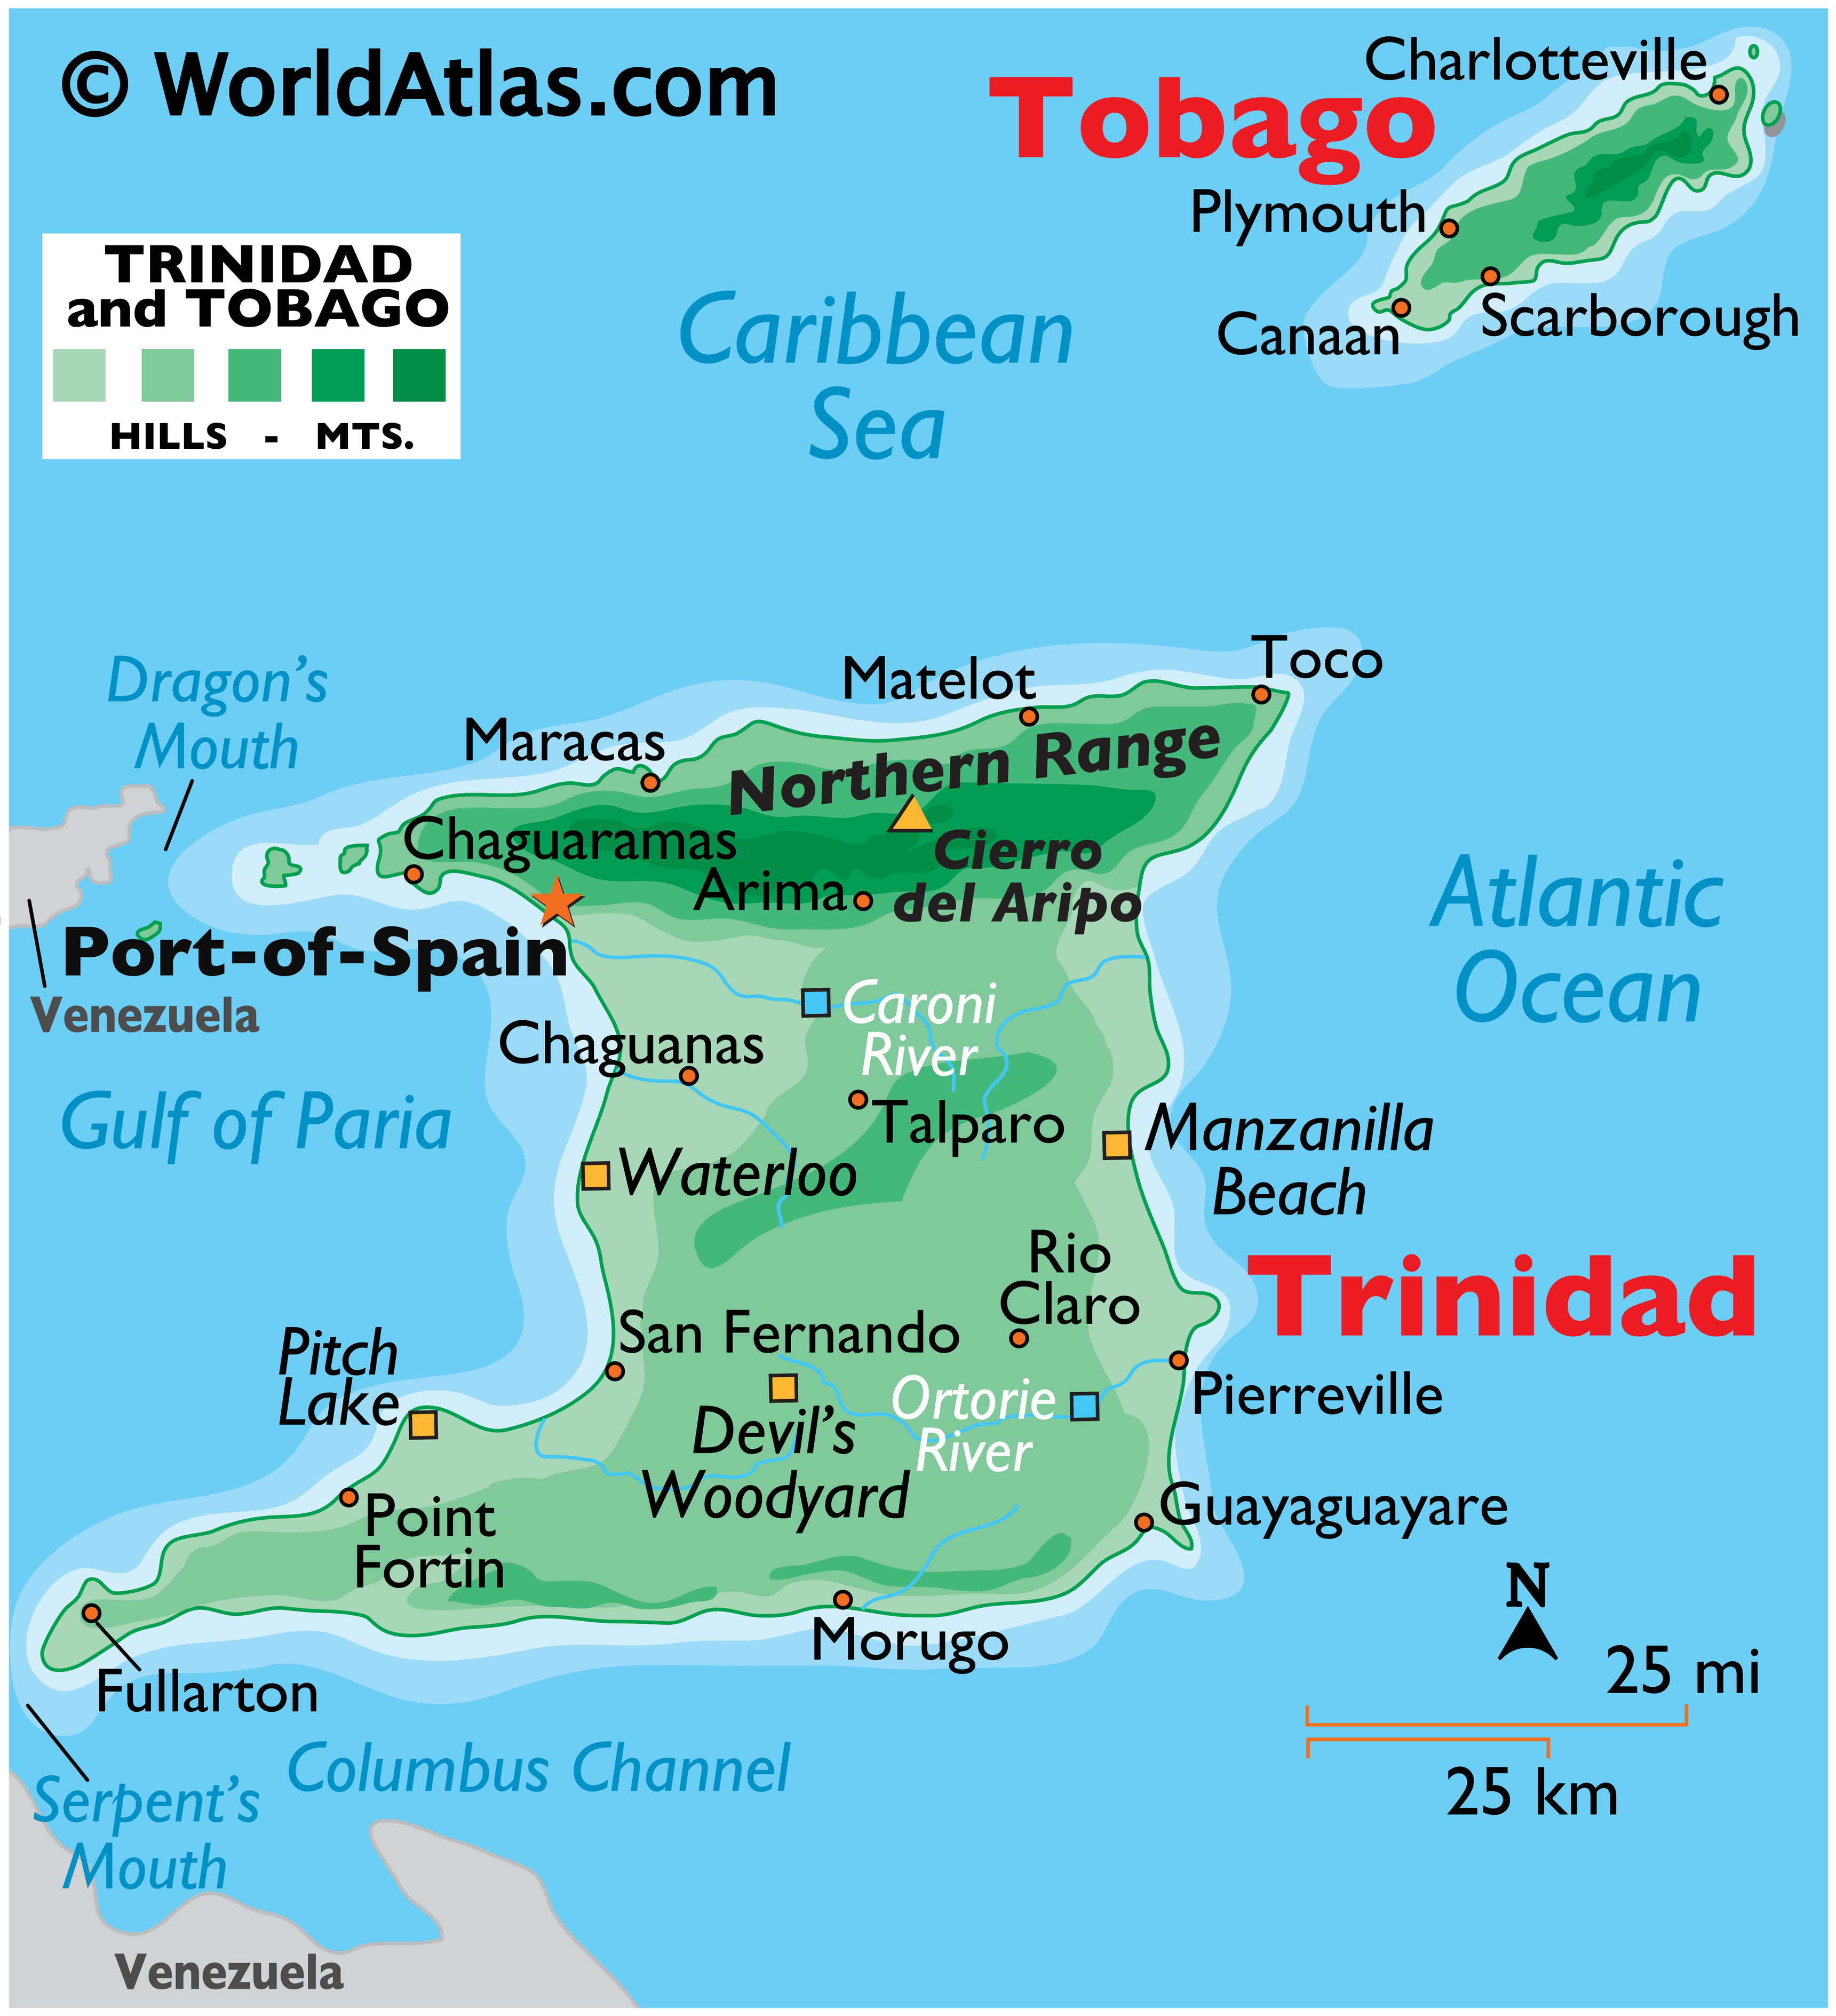 Geography of Trinidad and Tobago World Atlas